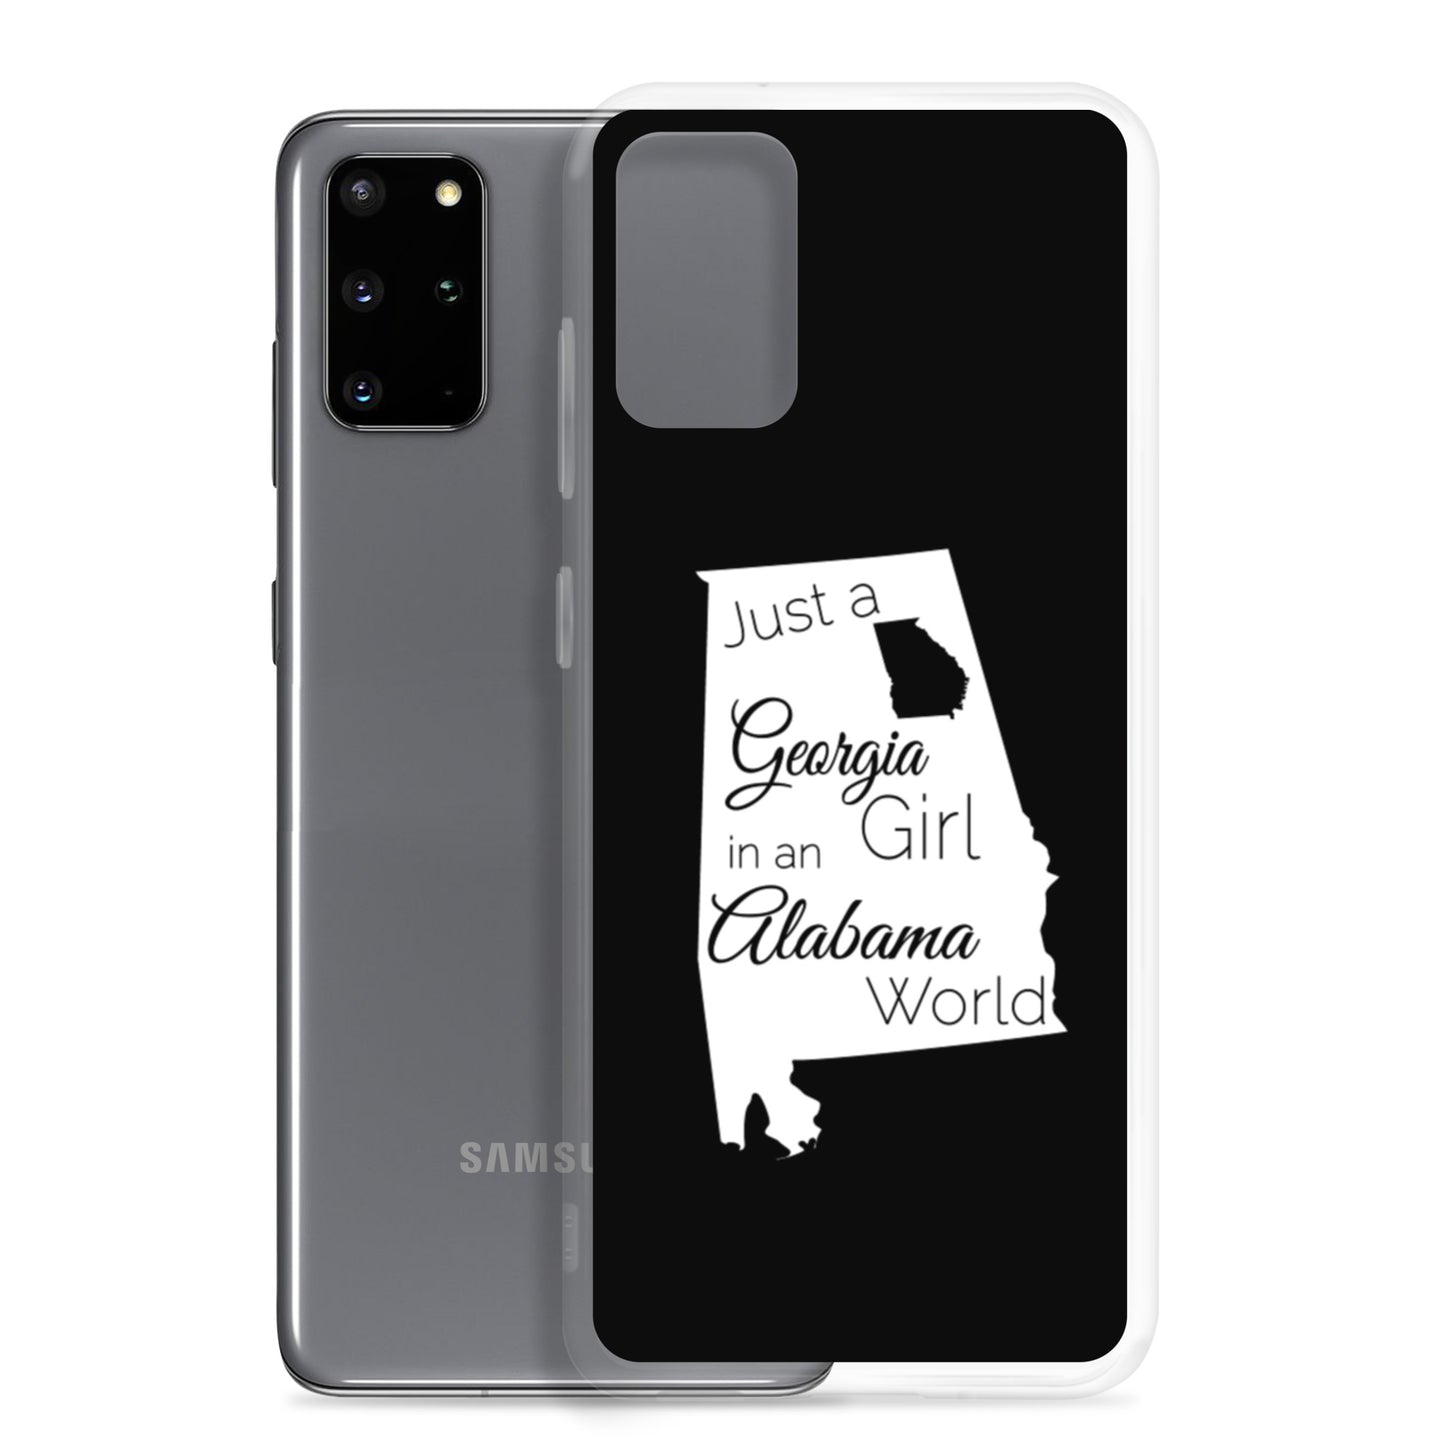 Just a Georgia Girl in an Alabama World Samsung Case